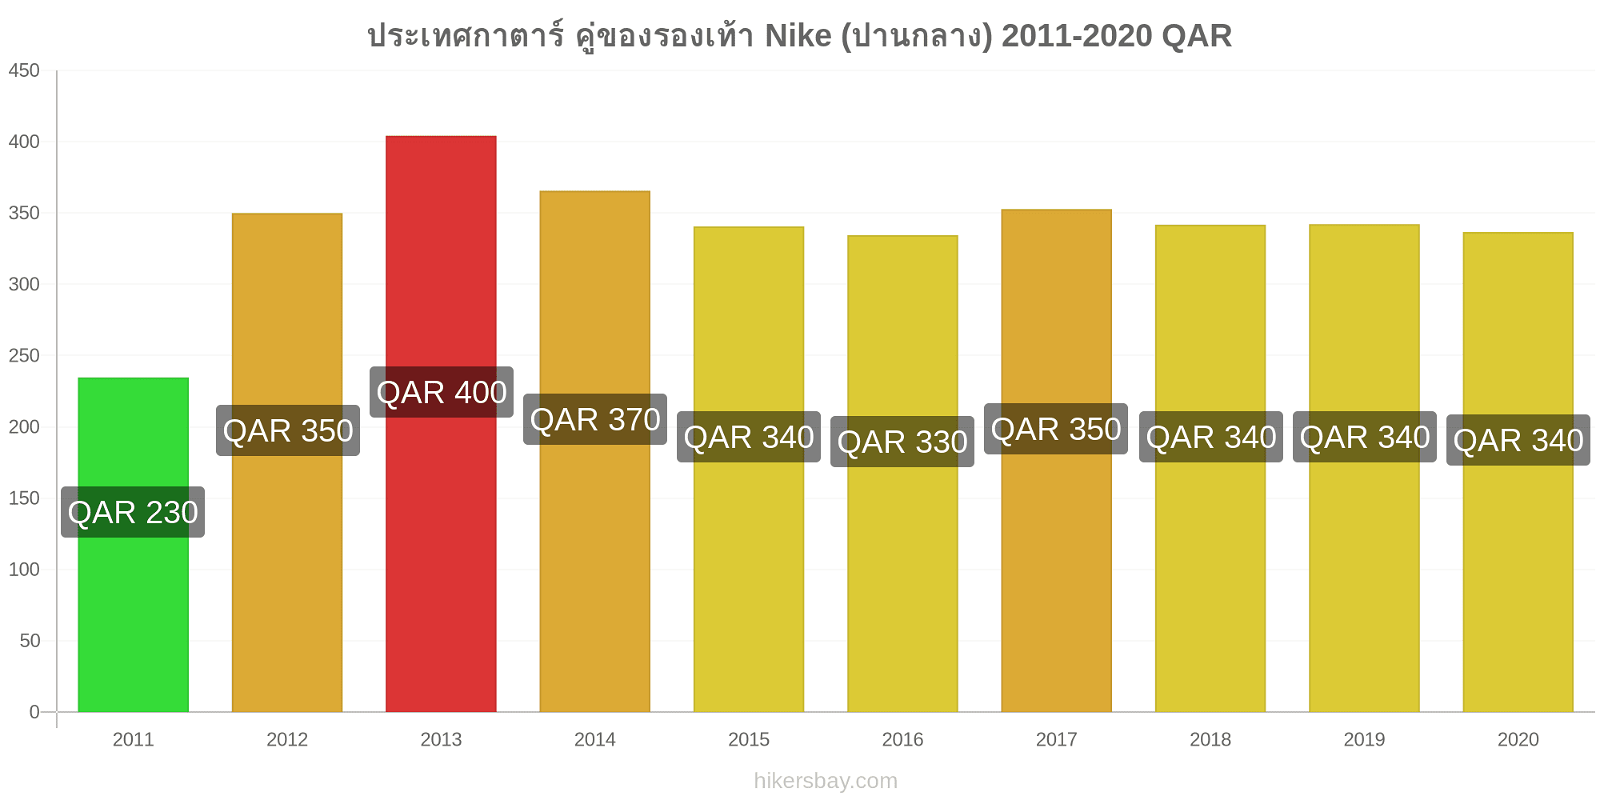 ประเทศกาตาร์ การเปลี่ยนแปลงราคา คู่ของรองเท้า Nike (ปานกลาง) hikersbay.com